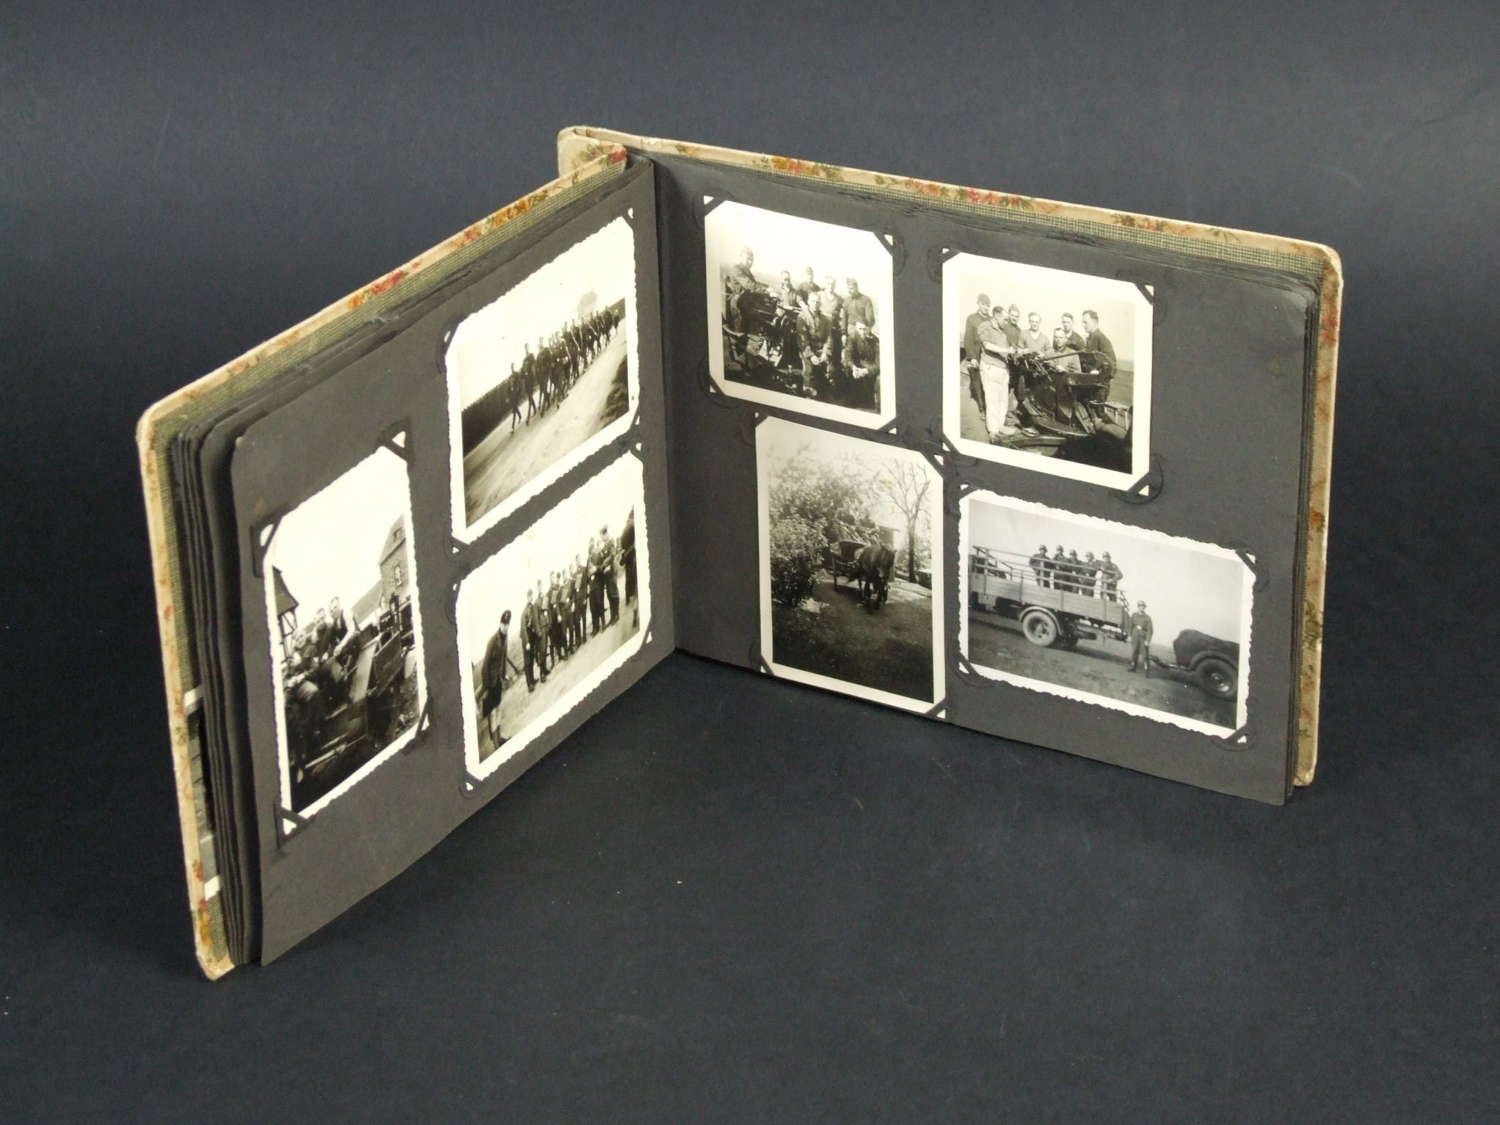 Luftwaffe Flak Gunner's Photograph Album